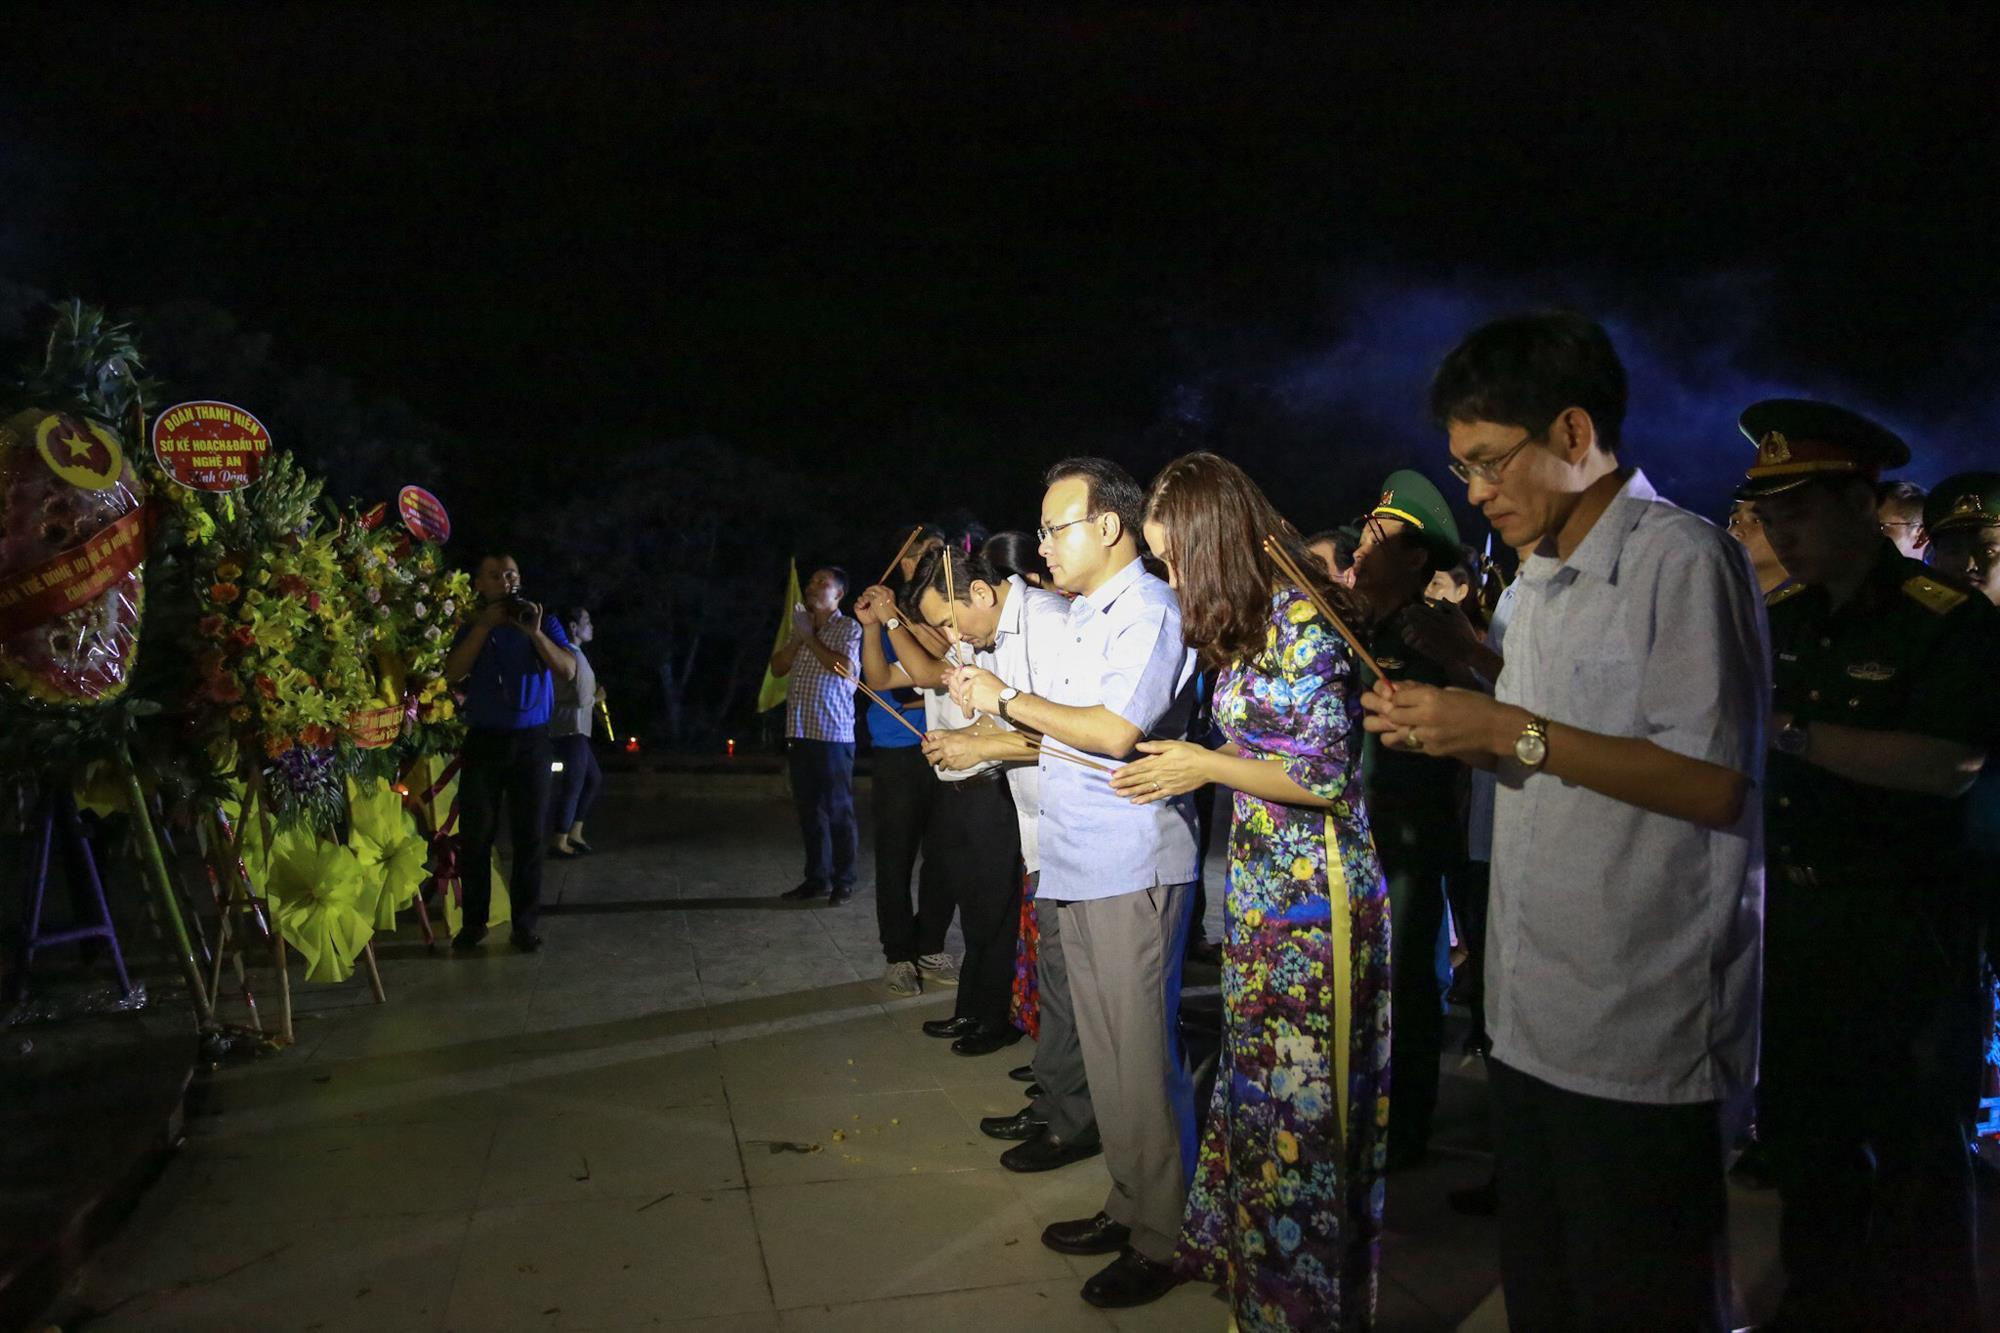 Bước vào lễ, các đại biểu tham dự đã tổ chức dâng hoa tưởng nhớ các anh hùng liệt sĩ tại đài tưởng niệm. Ảnh: Hải Vương